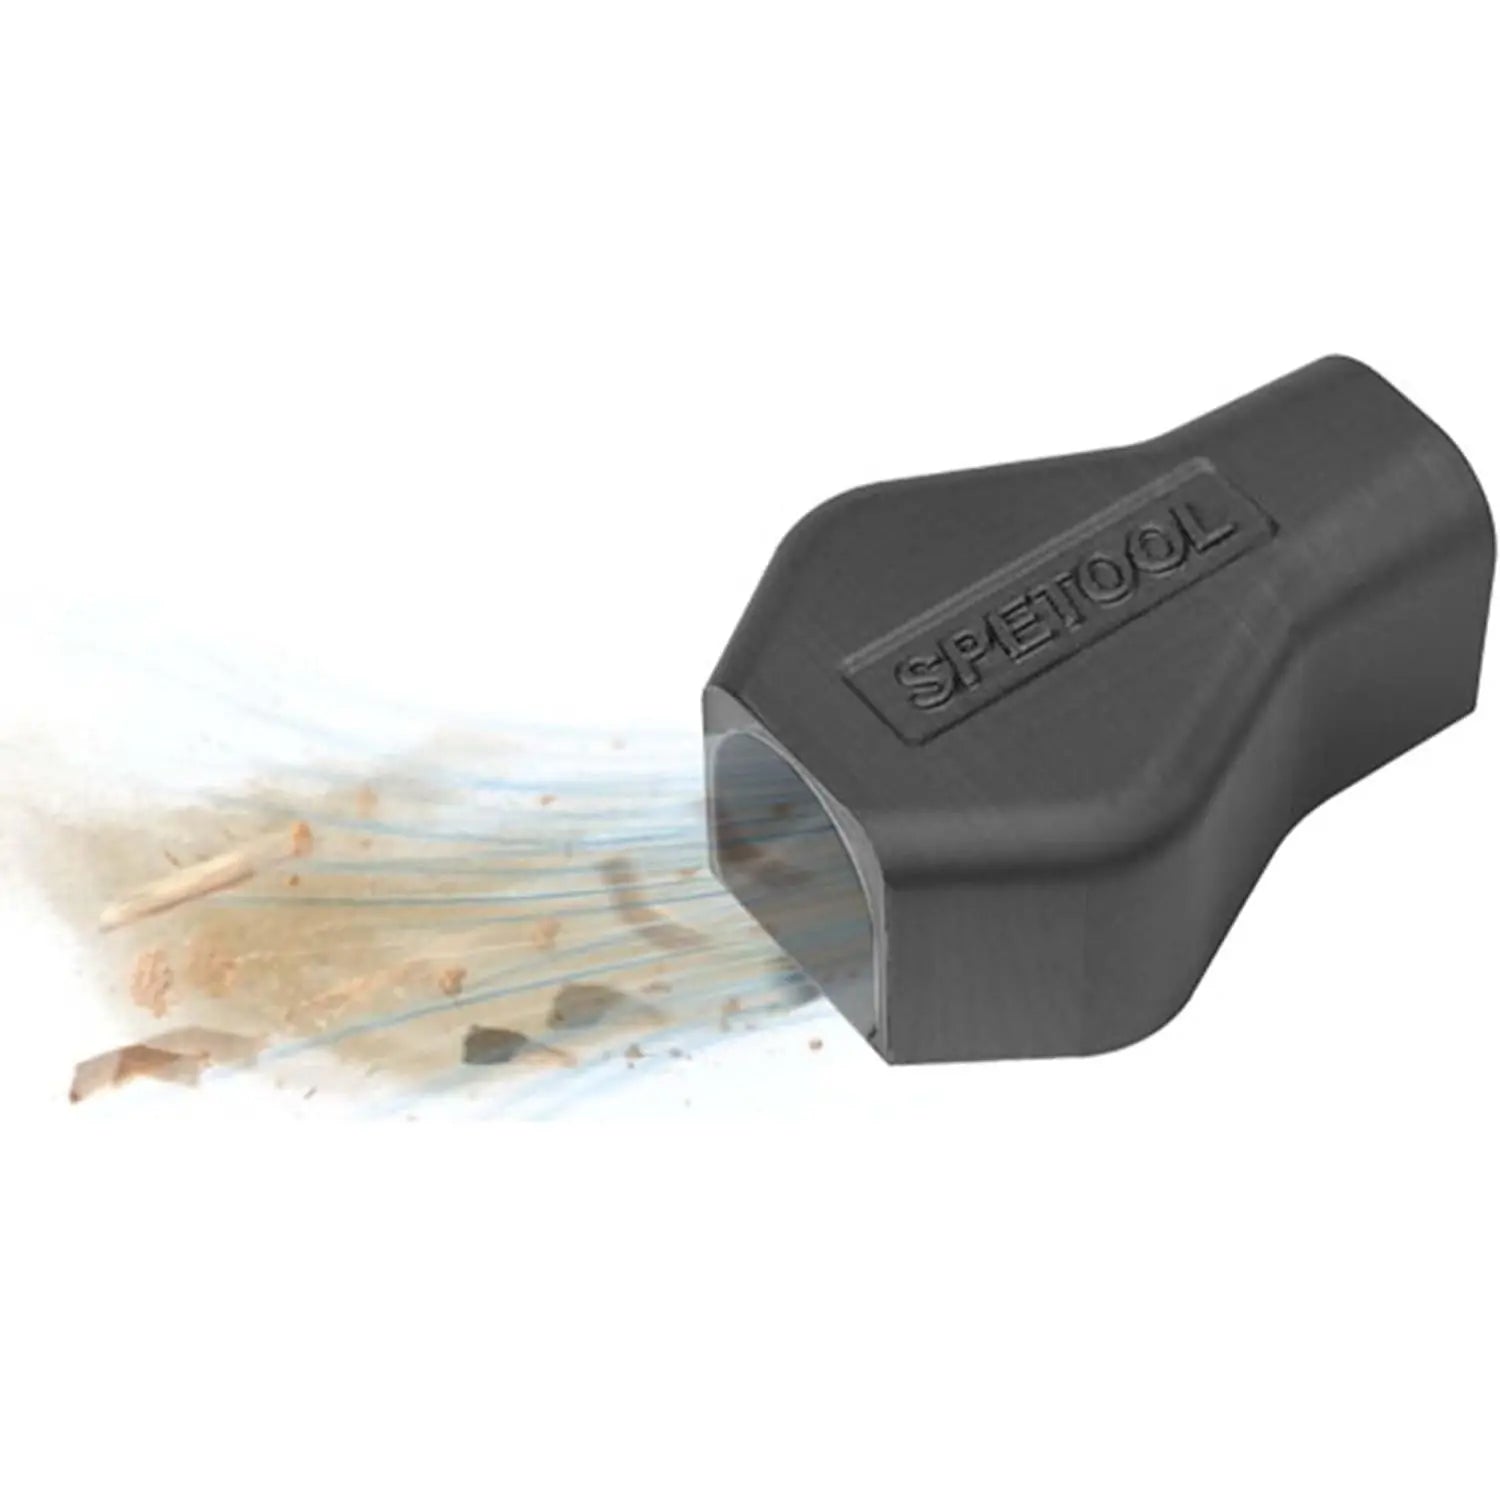 SpeTool Mini Adsorption Dust Hood For Festool Dust Collectors 27mm